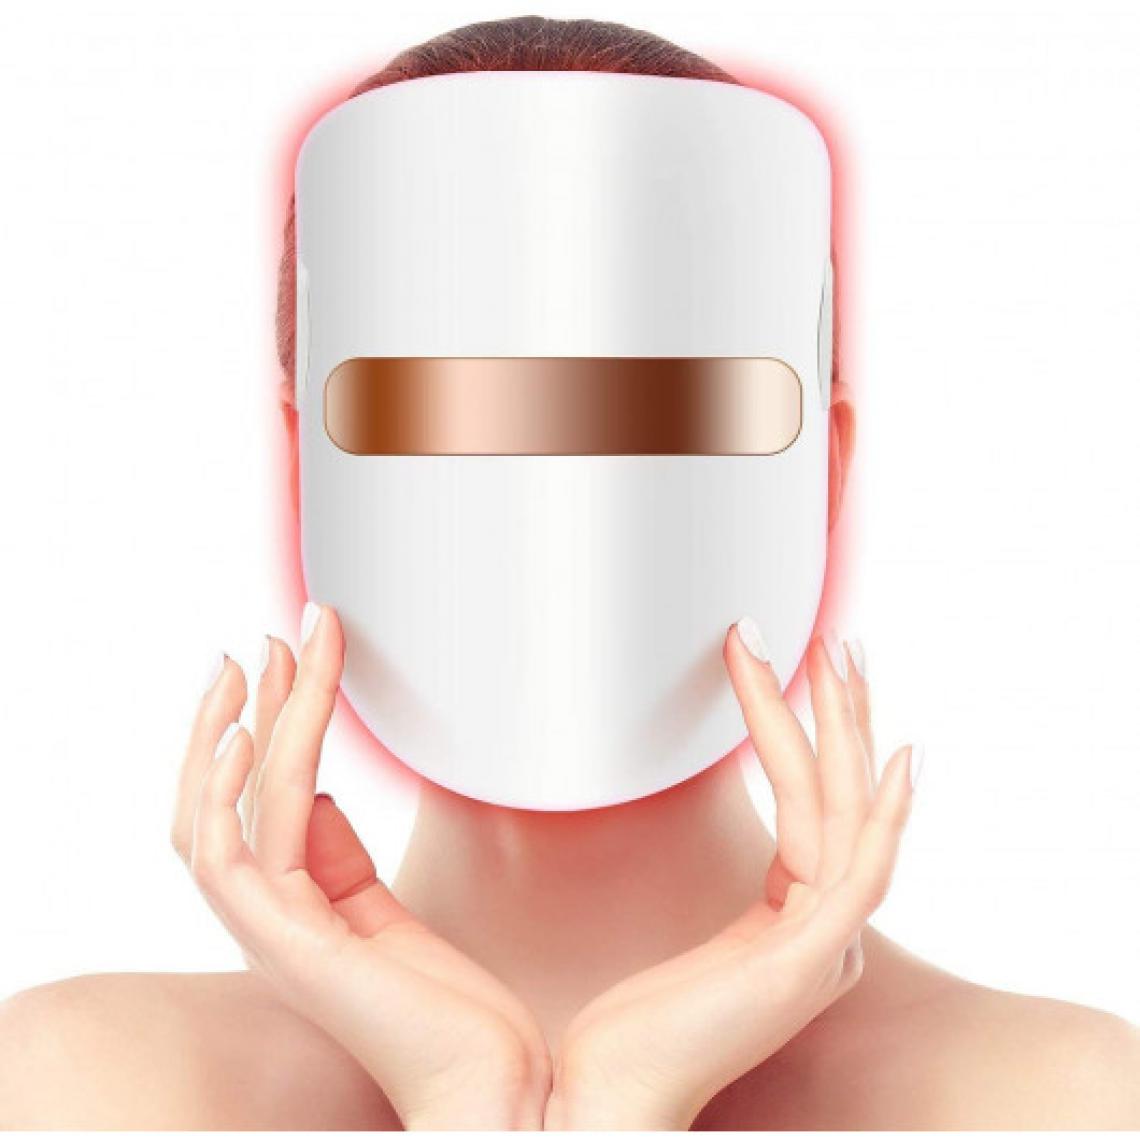 Ofs Selection - Hangsun FT350, le masque contre l'acné - Autre appareil de mesure